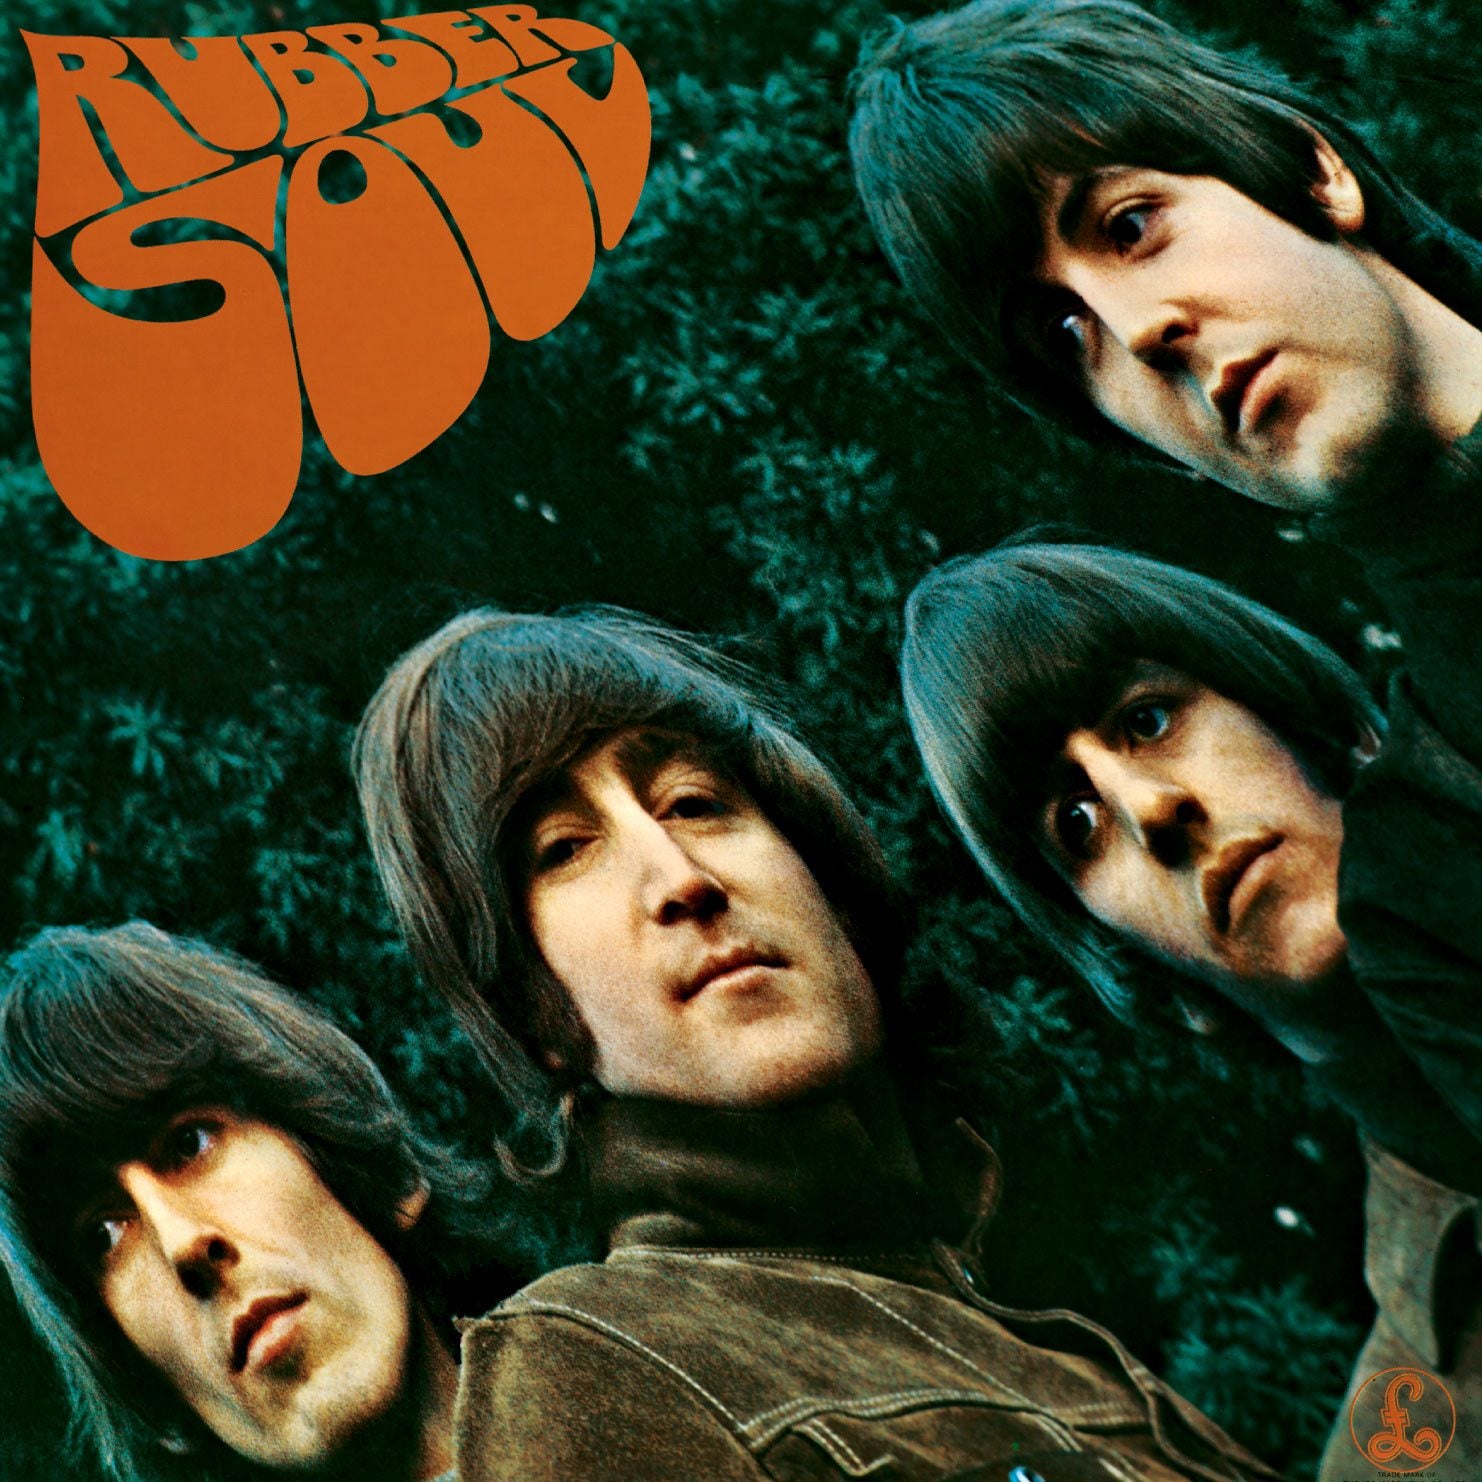 The Beatles - Rubber Soul (180g Vinyl) Australia